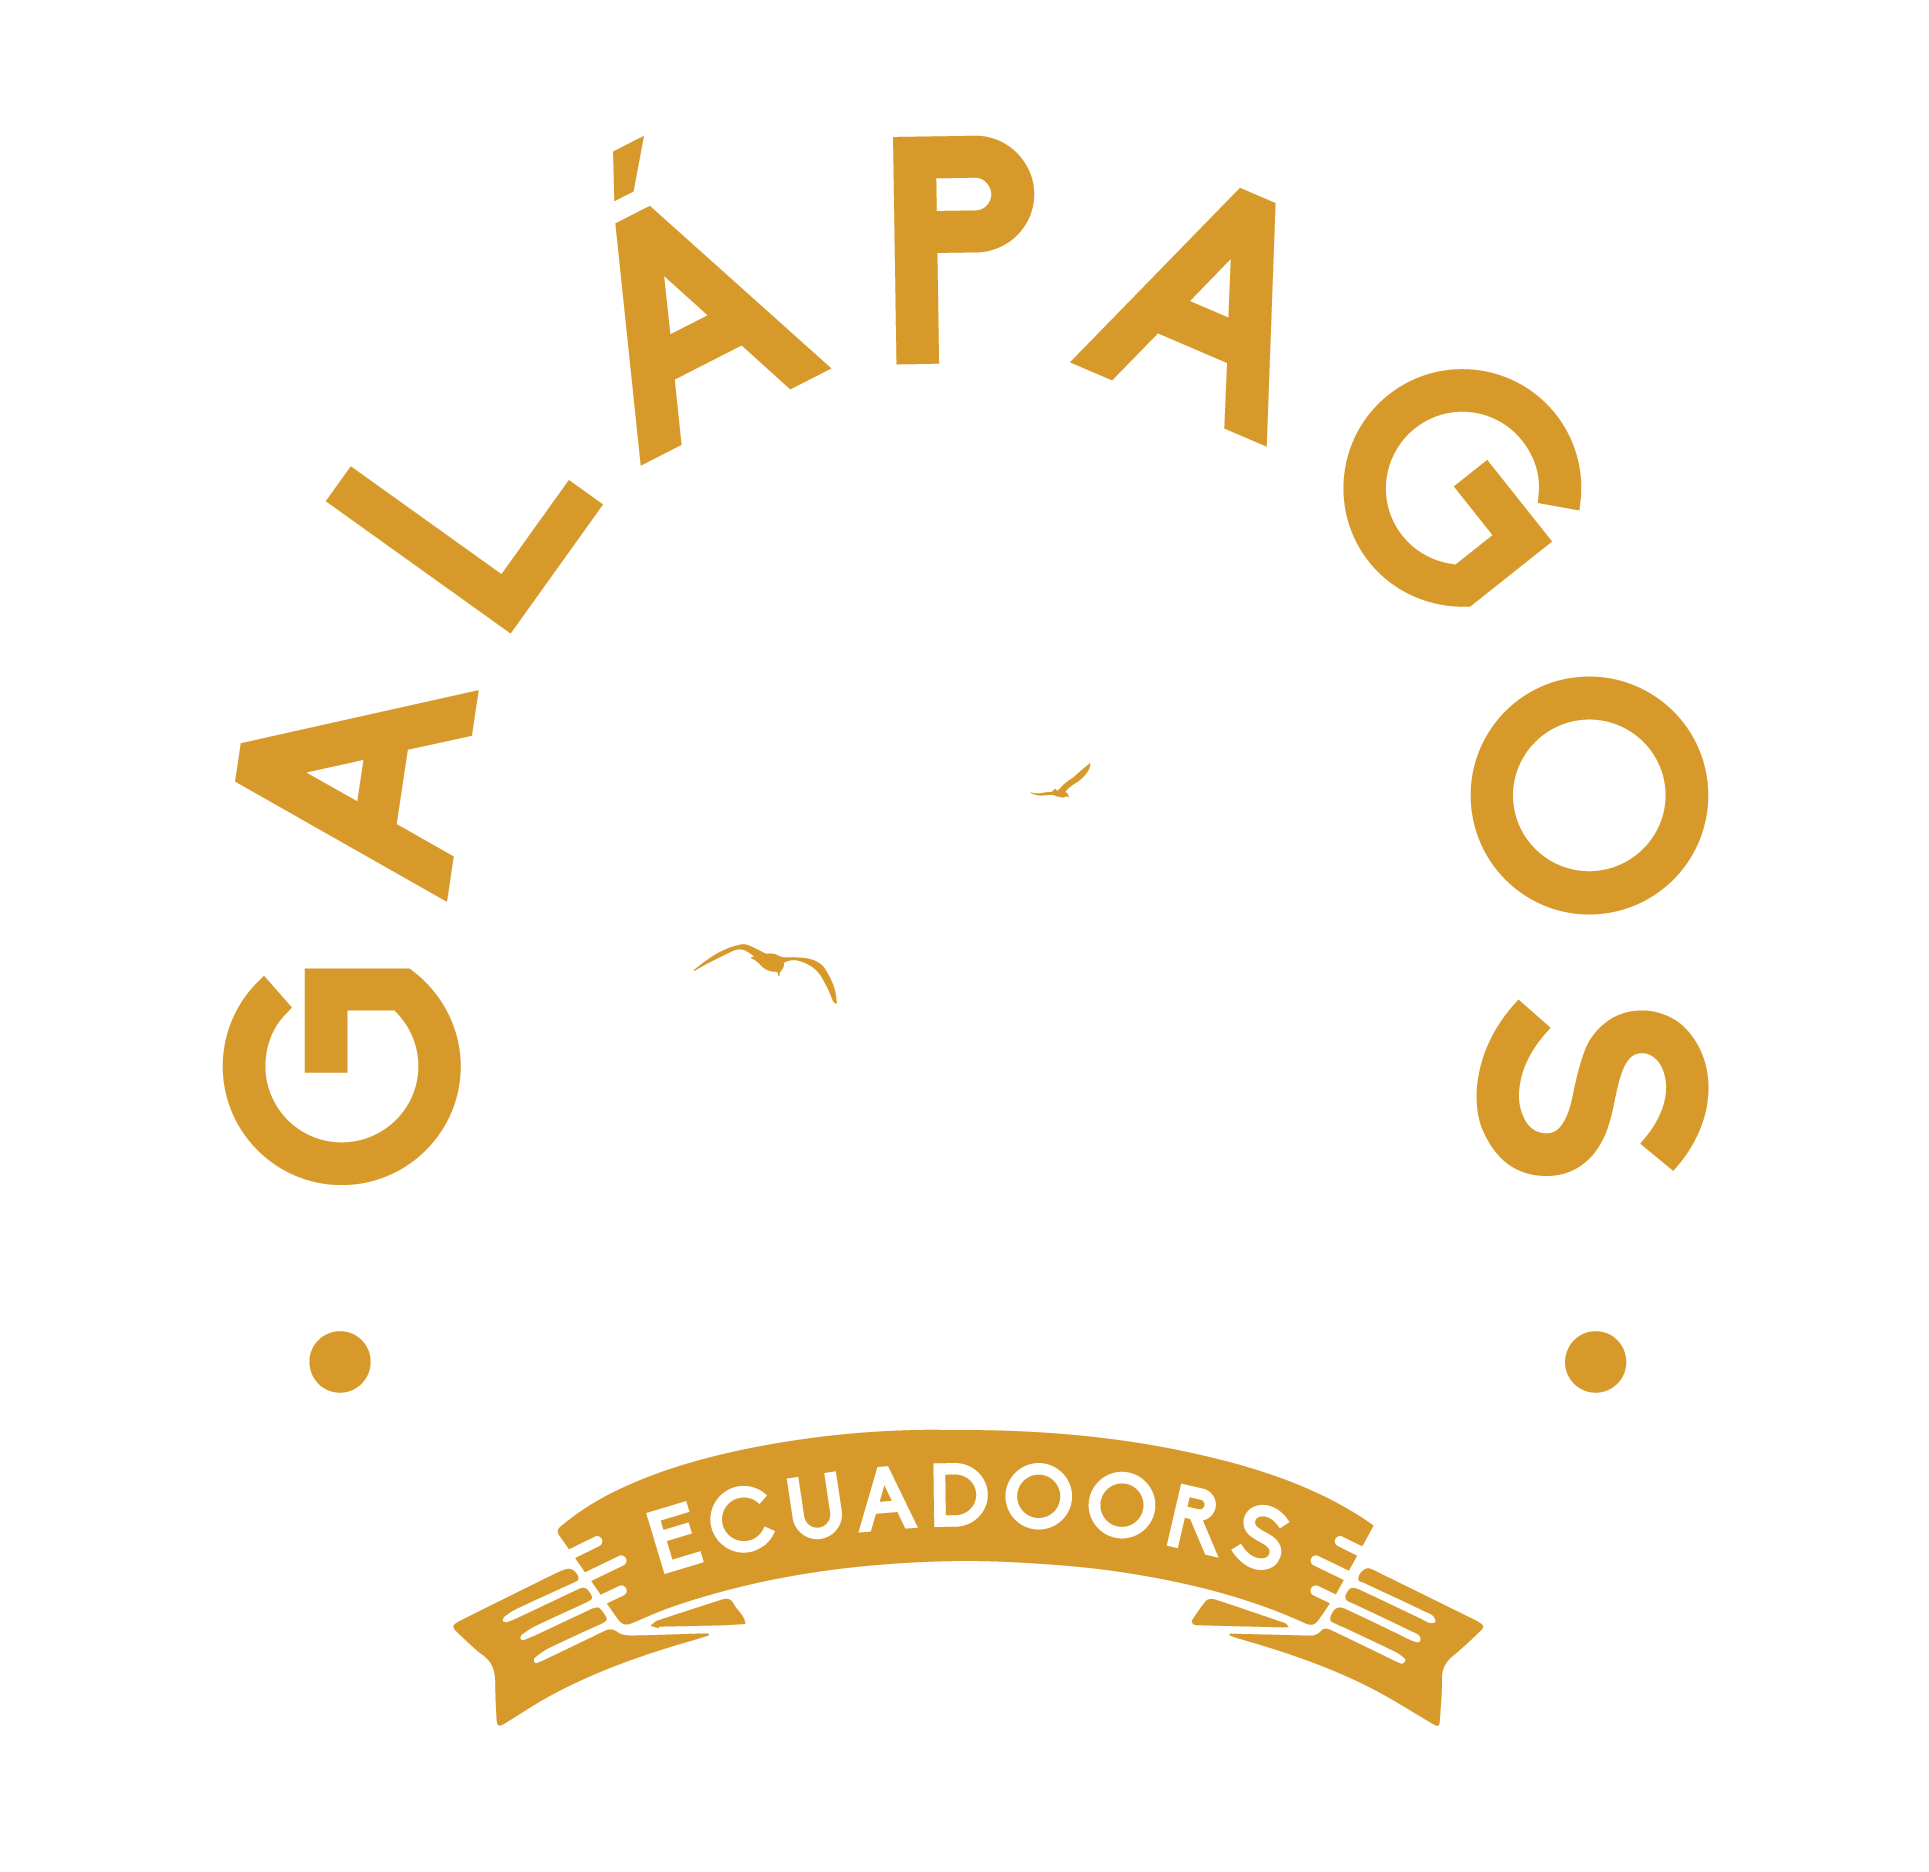 Galapagos-Ecuadoors